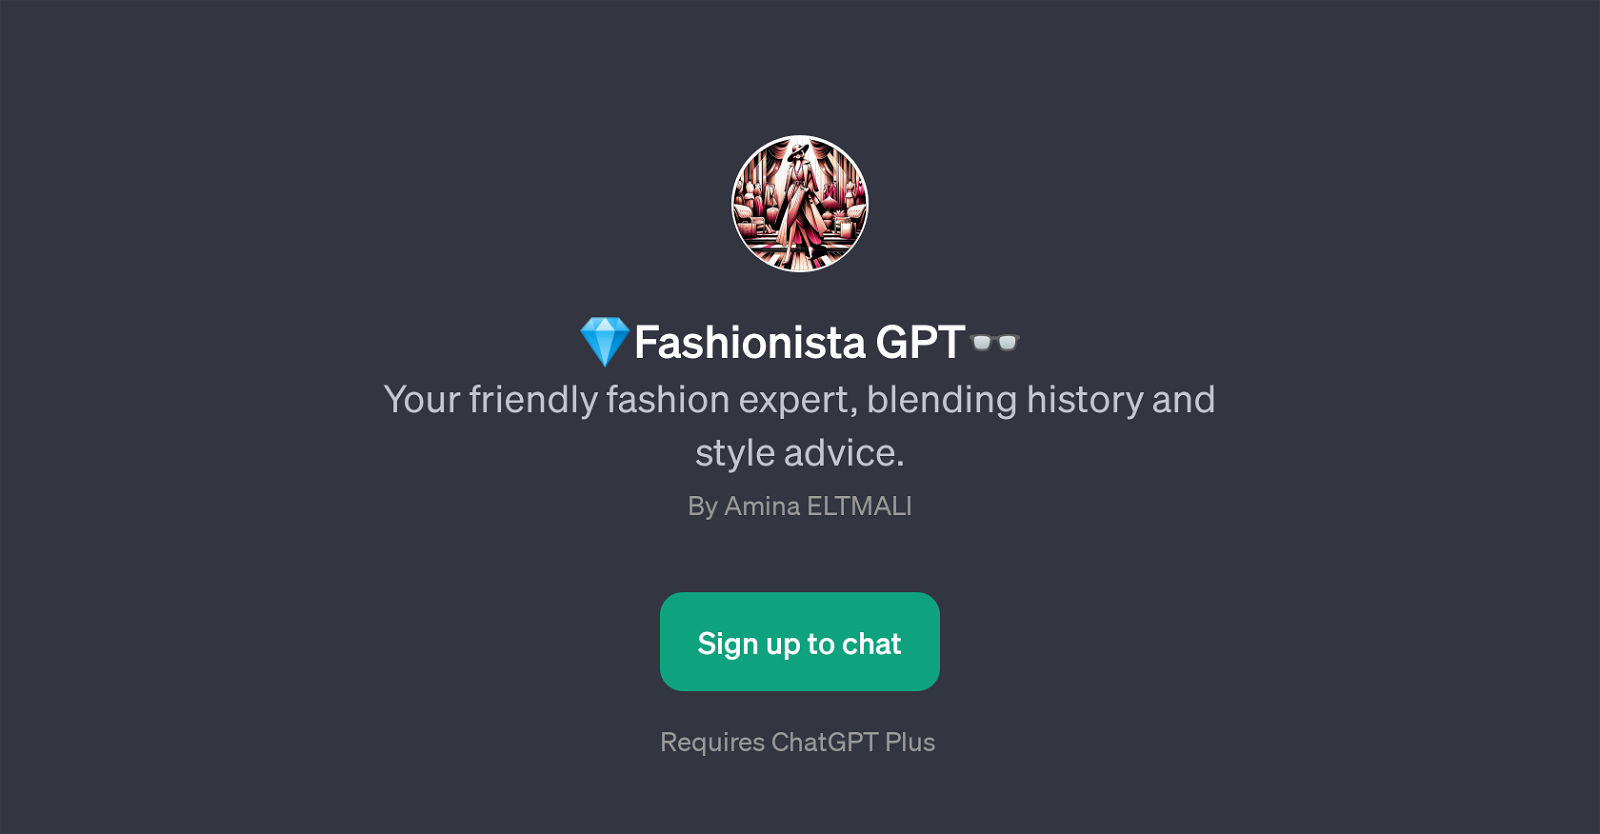 Fashionista GPT website